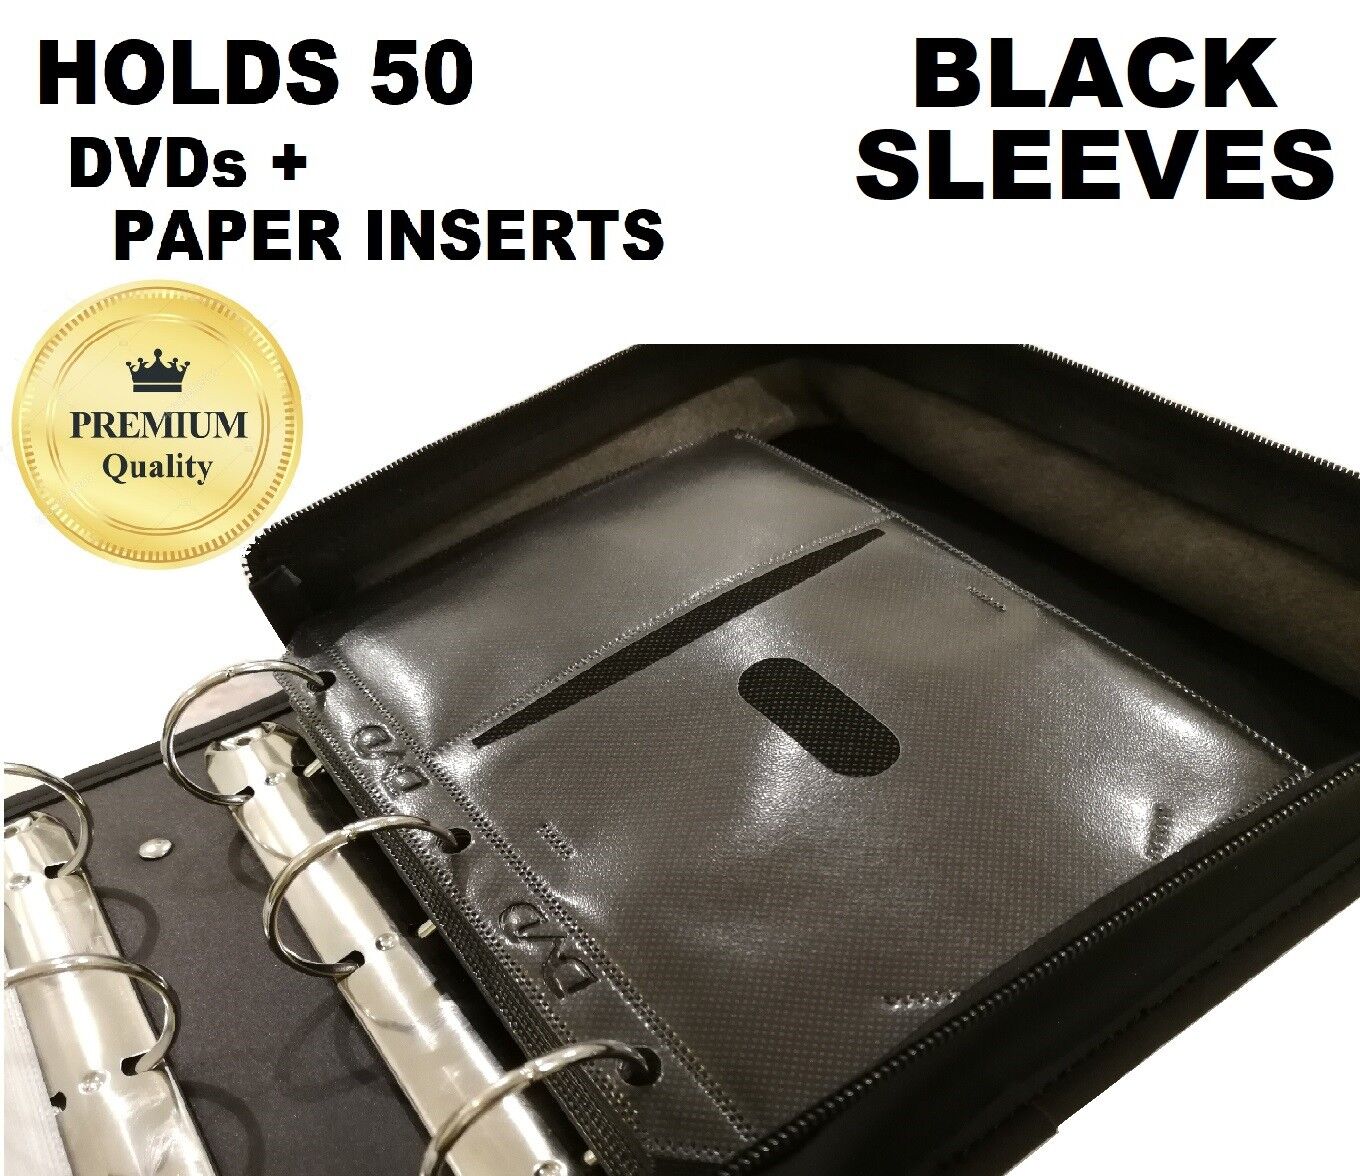 PREMIUM 50 DVD Movie Storage Case Wallet Black Leather Folder Album DVD Sleeves